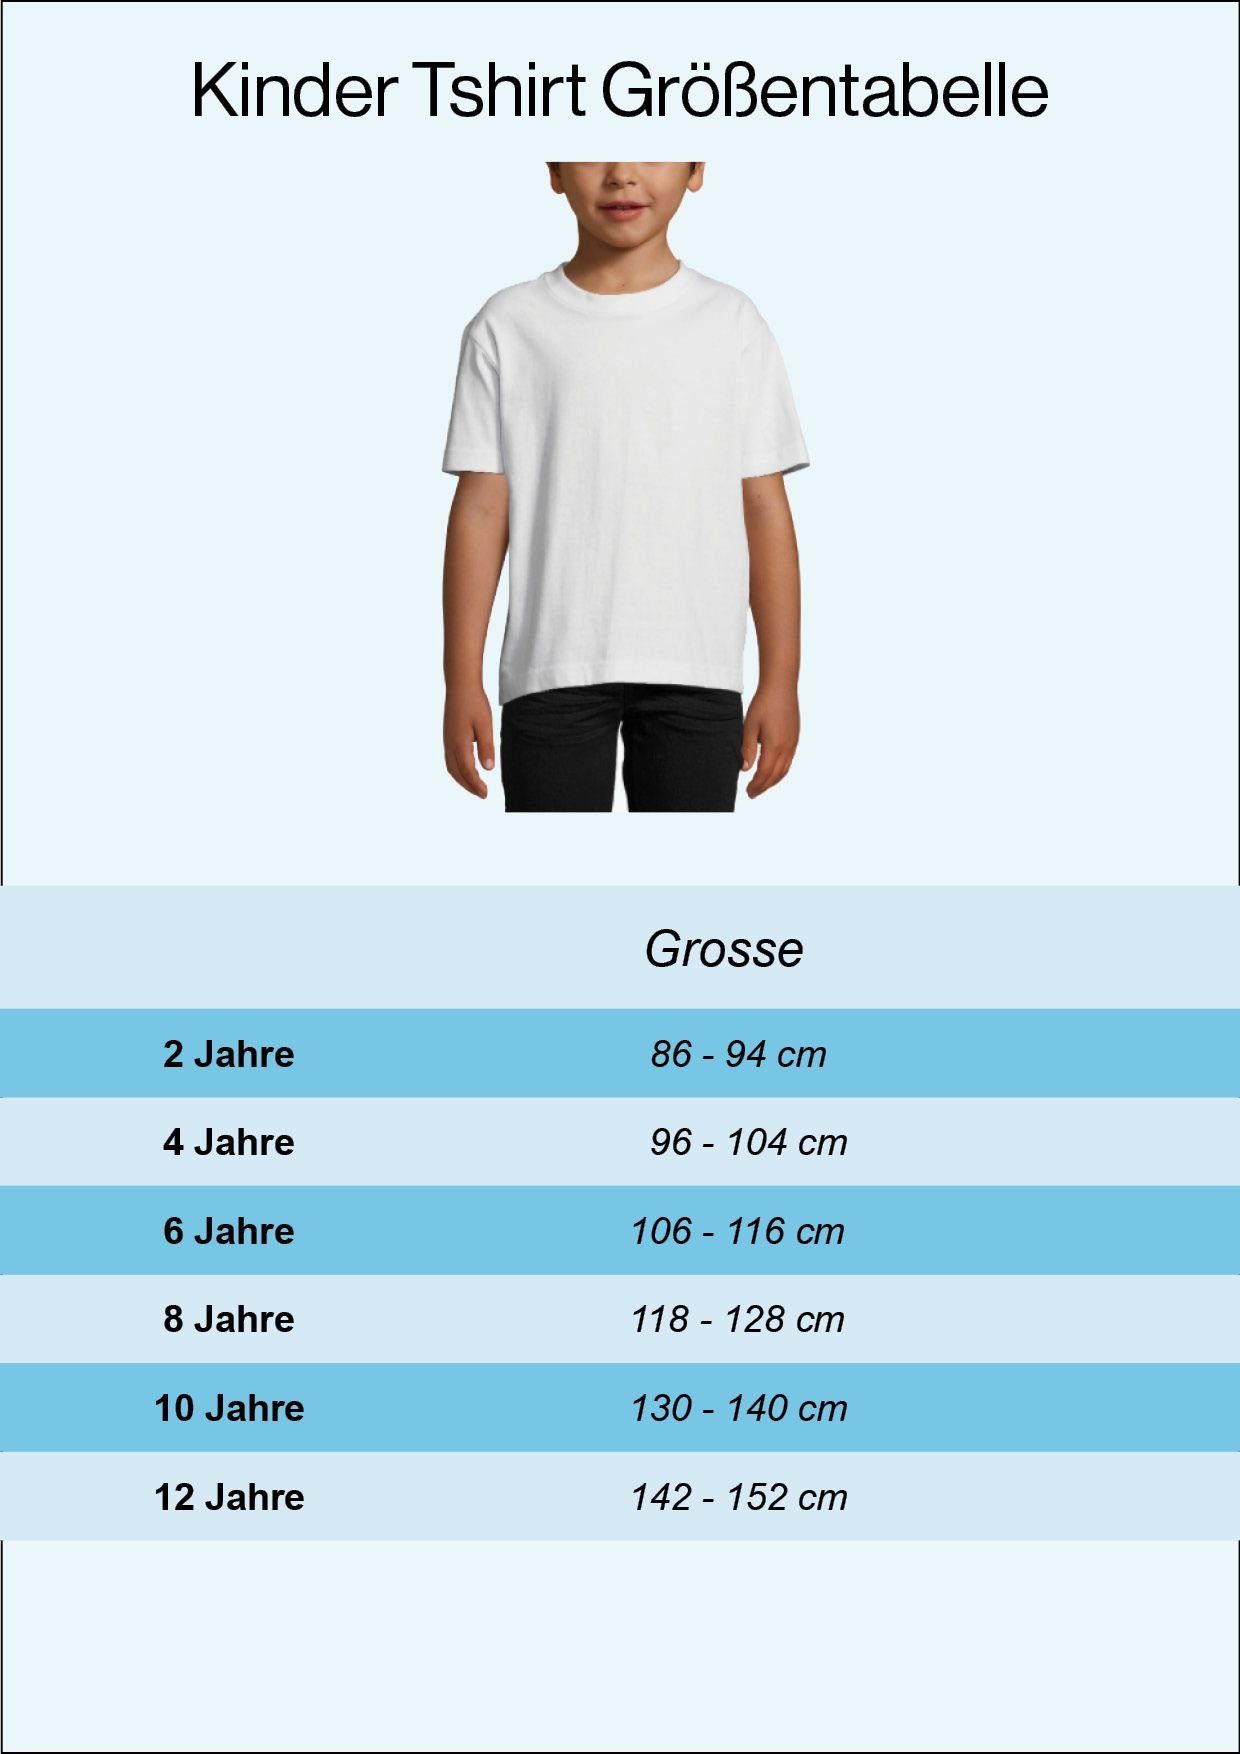 Herren Shirts Youth Designz T-Shirt Deutschland Kinder T-Shirt im Fußball Trikot Look mit trendigem Motiv